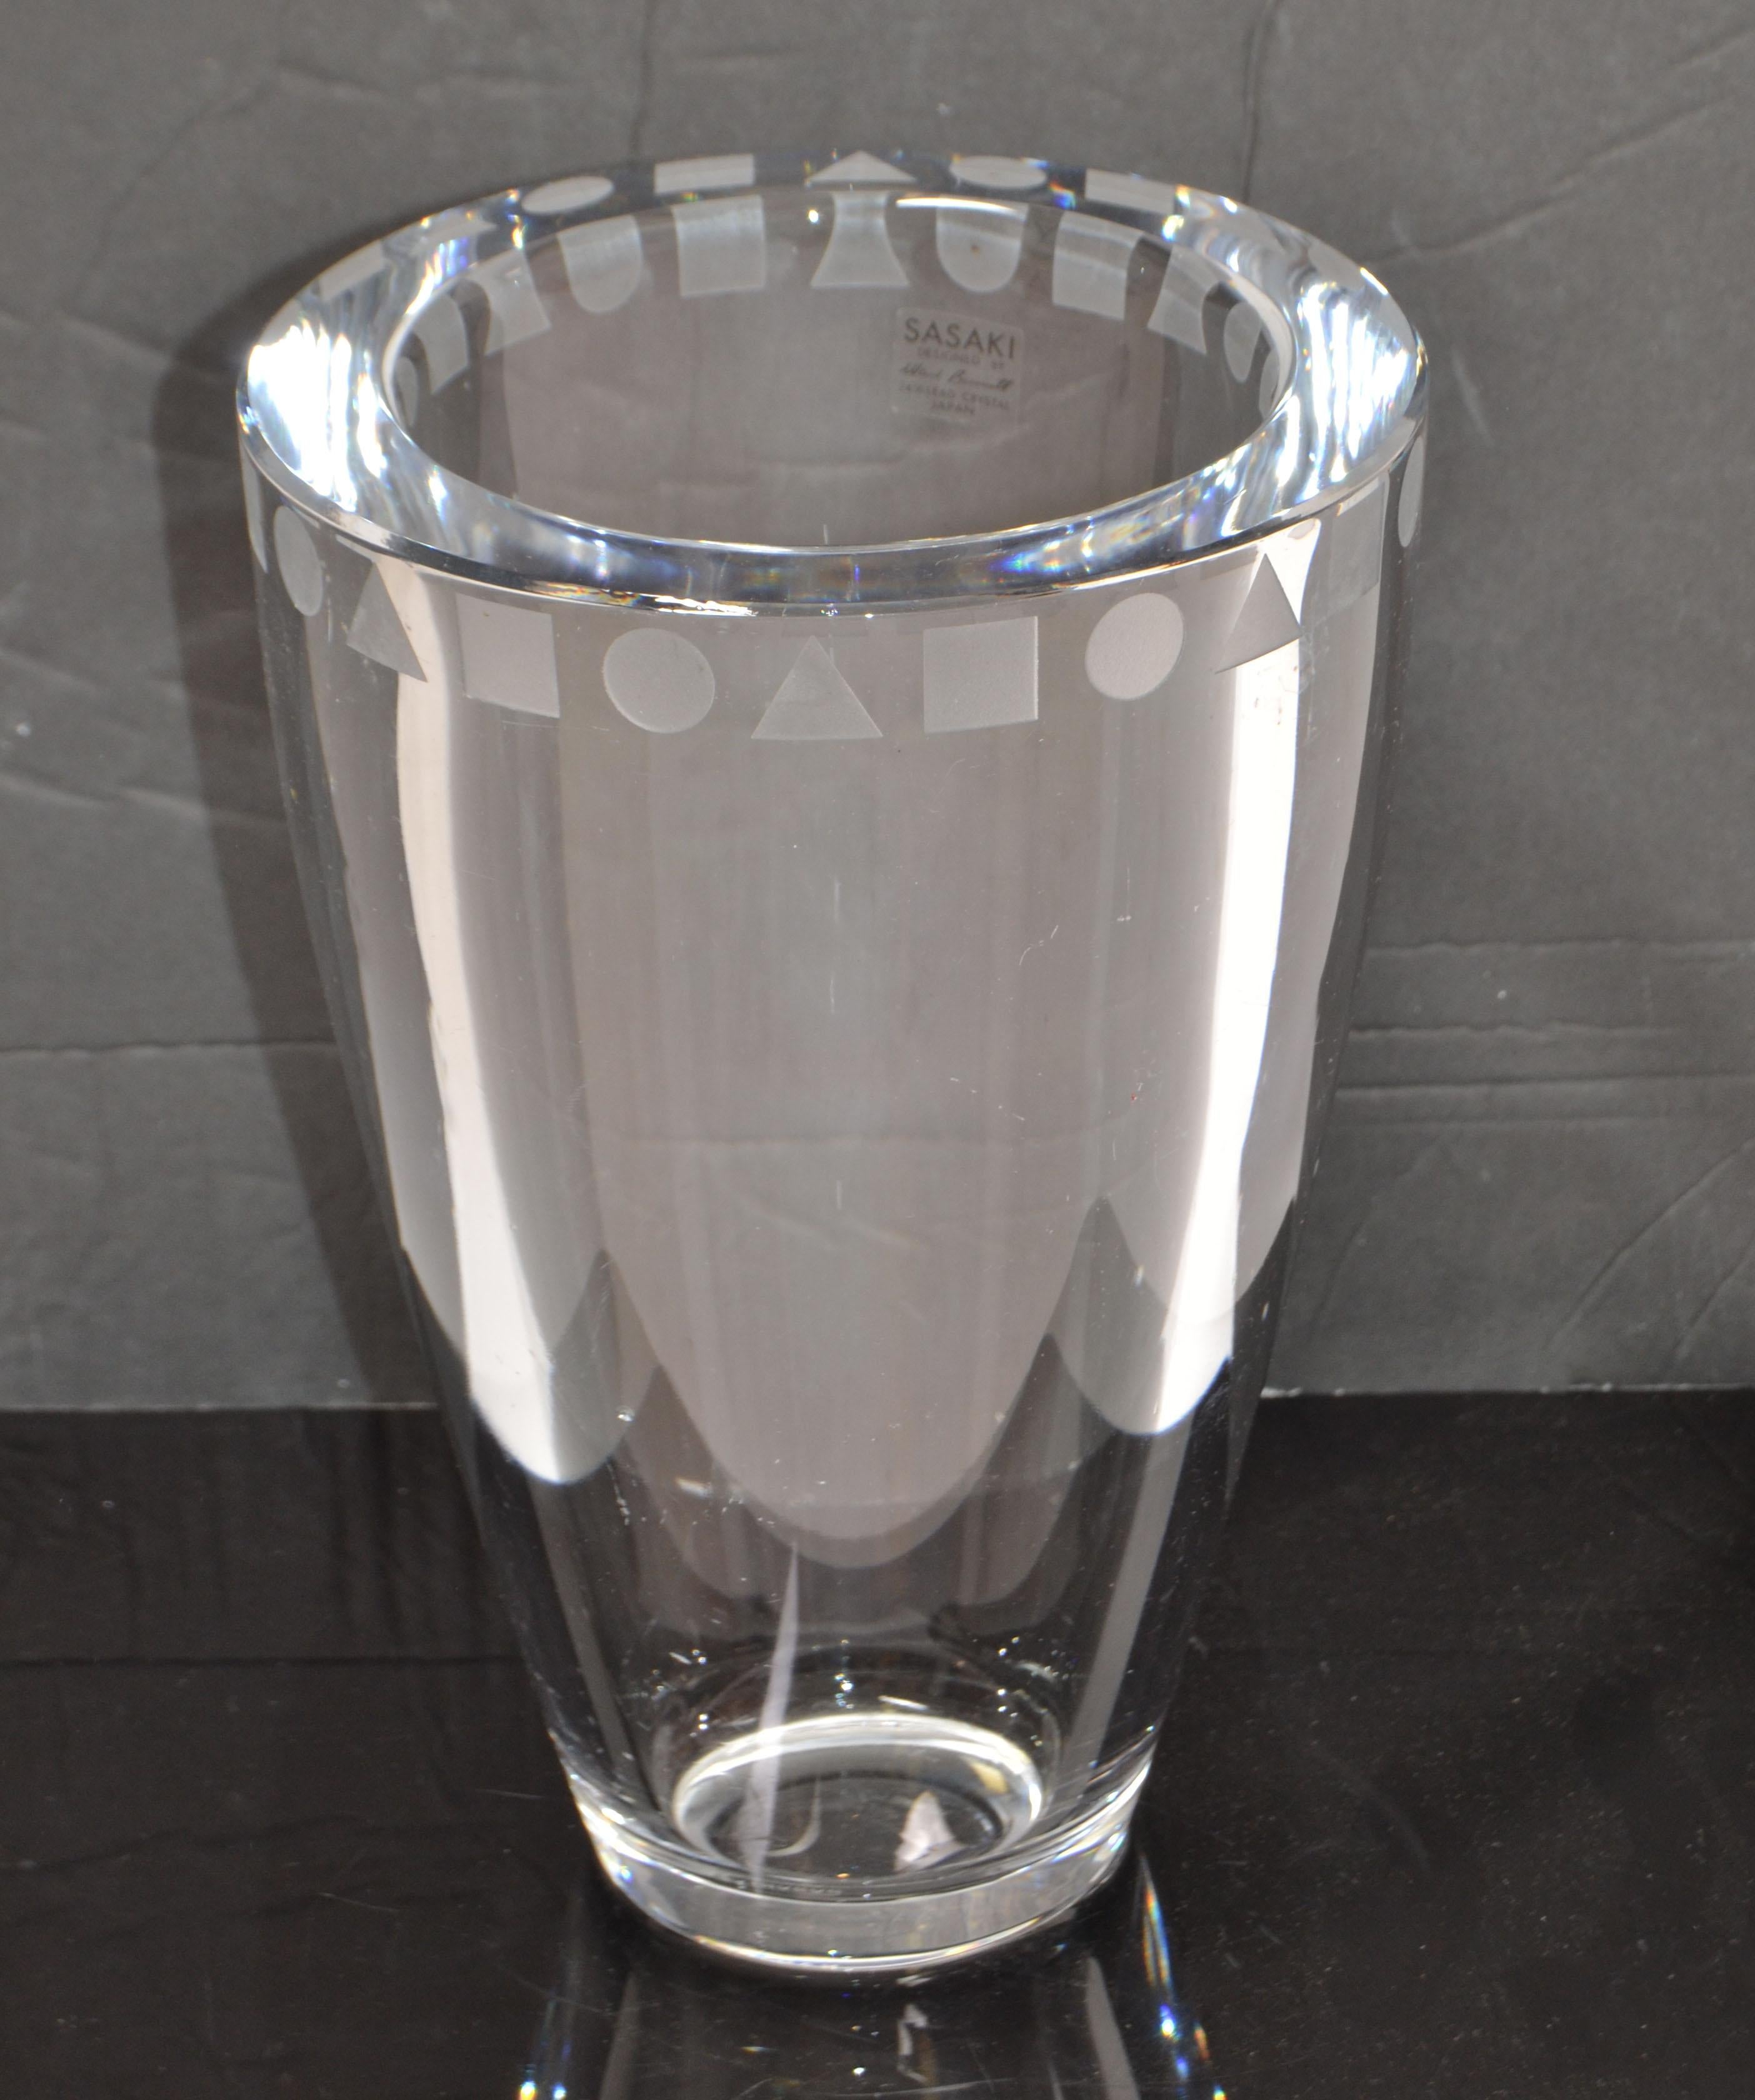 Vase rond en cristal au plomb, signé Sasaki Sengai, gravé à l'eau-forte, fabriqué au Japon et conçu par Ward Bennett.
24% de cristal de plomb.
Marqué d'une étiquette et gravé.
Le vase est très lourd.
 